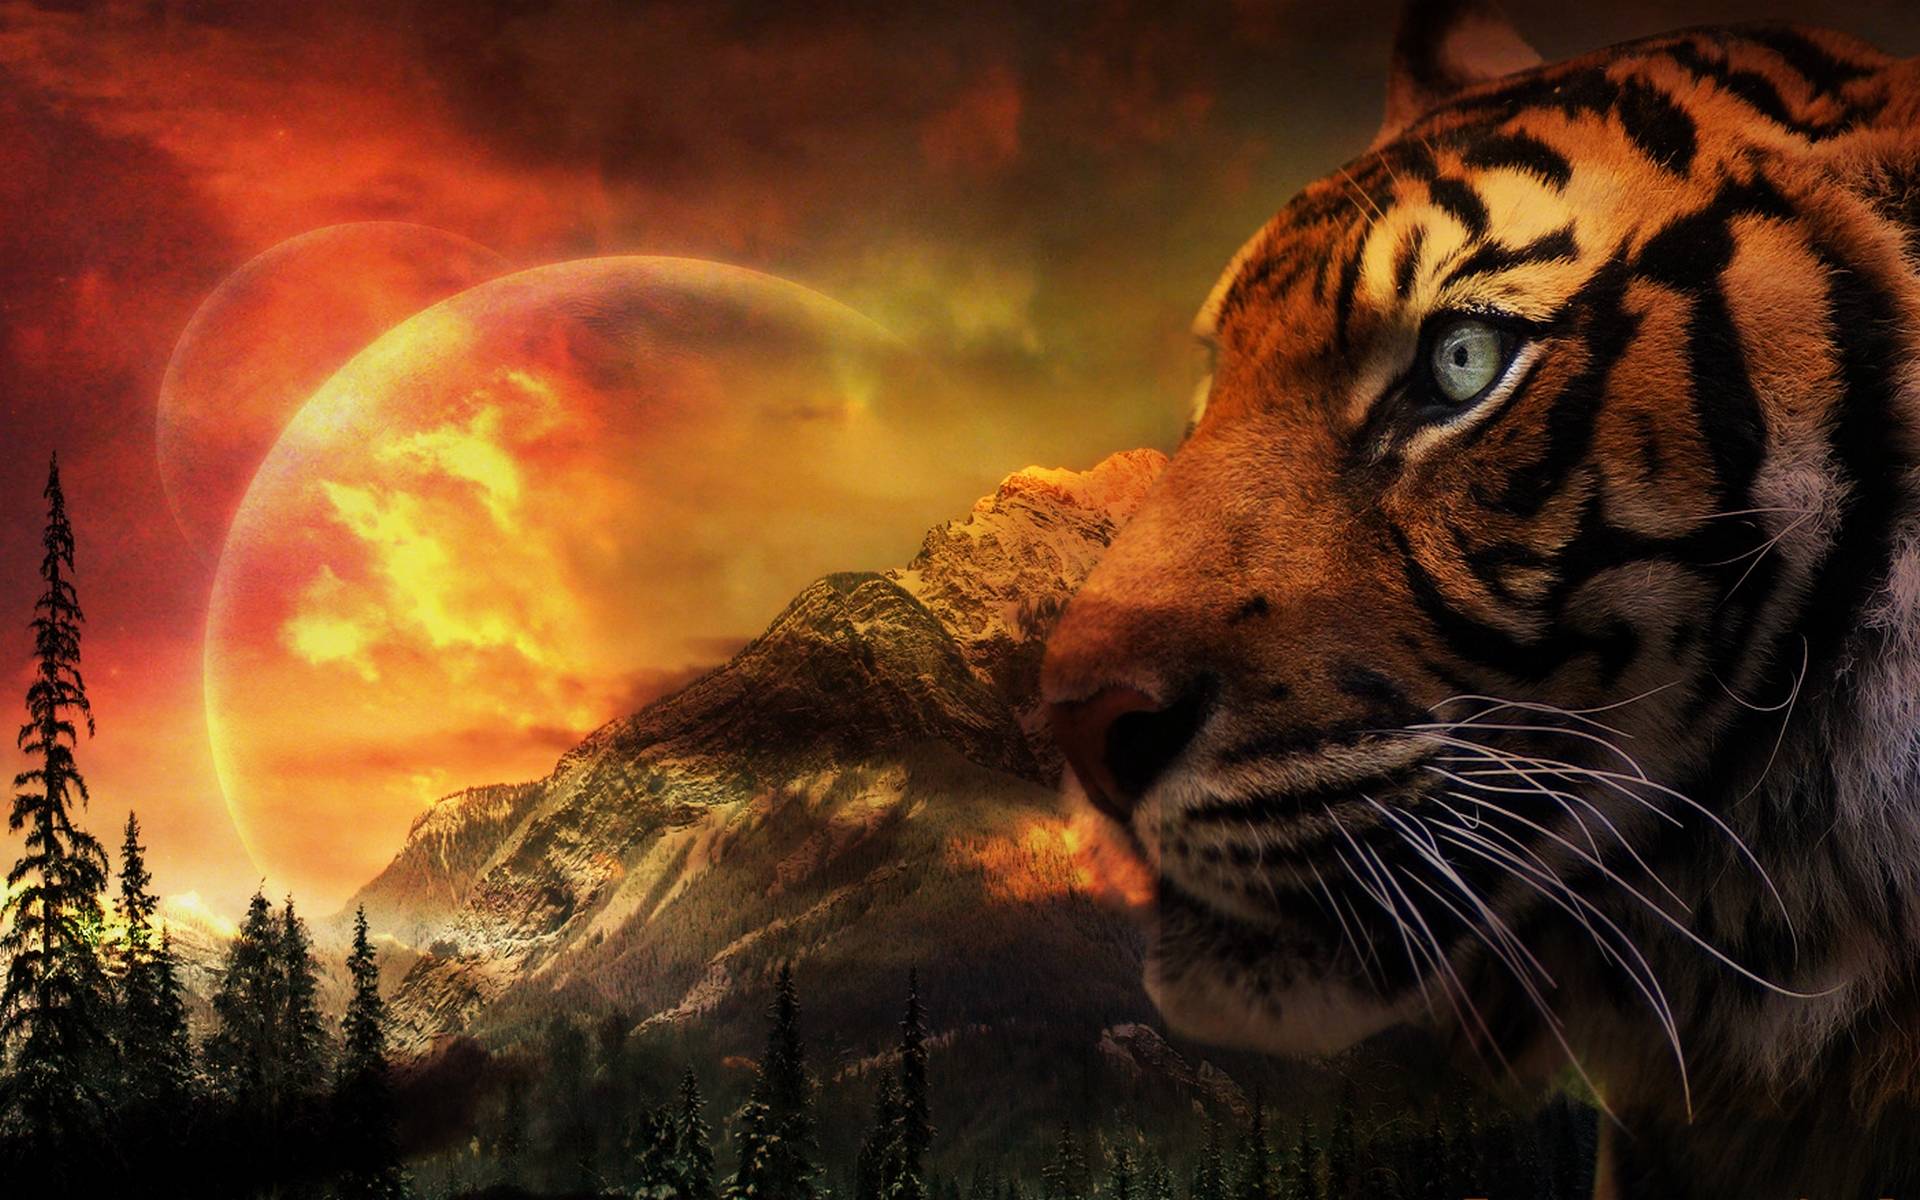 Fantasy landscape with tiger